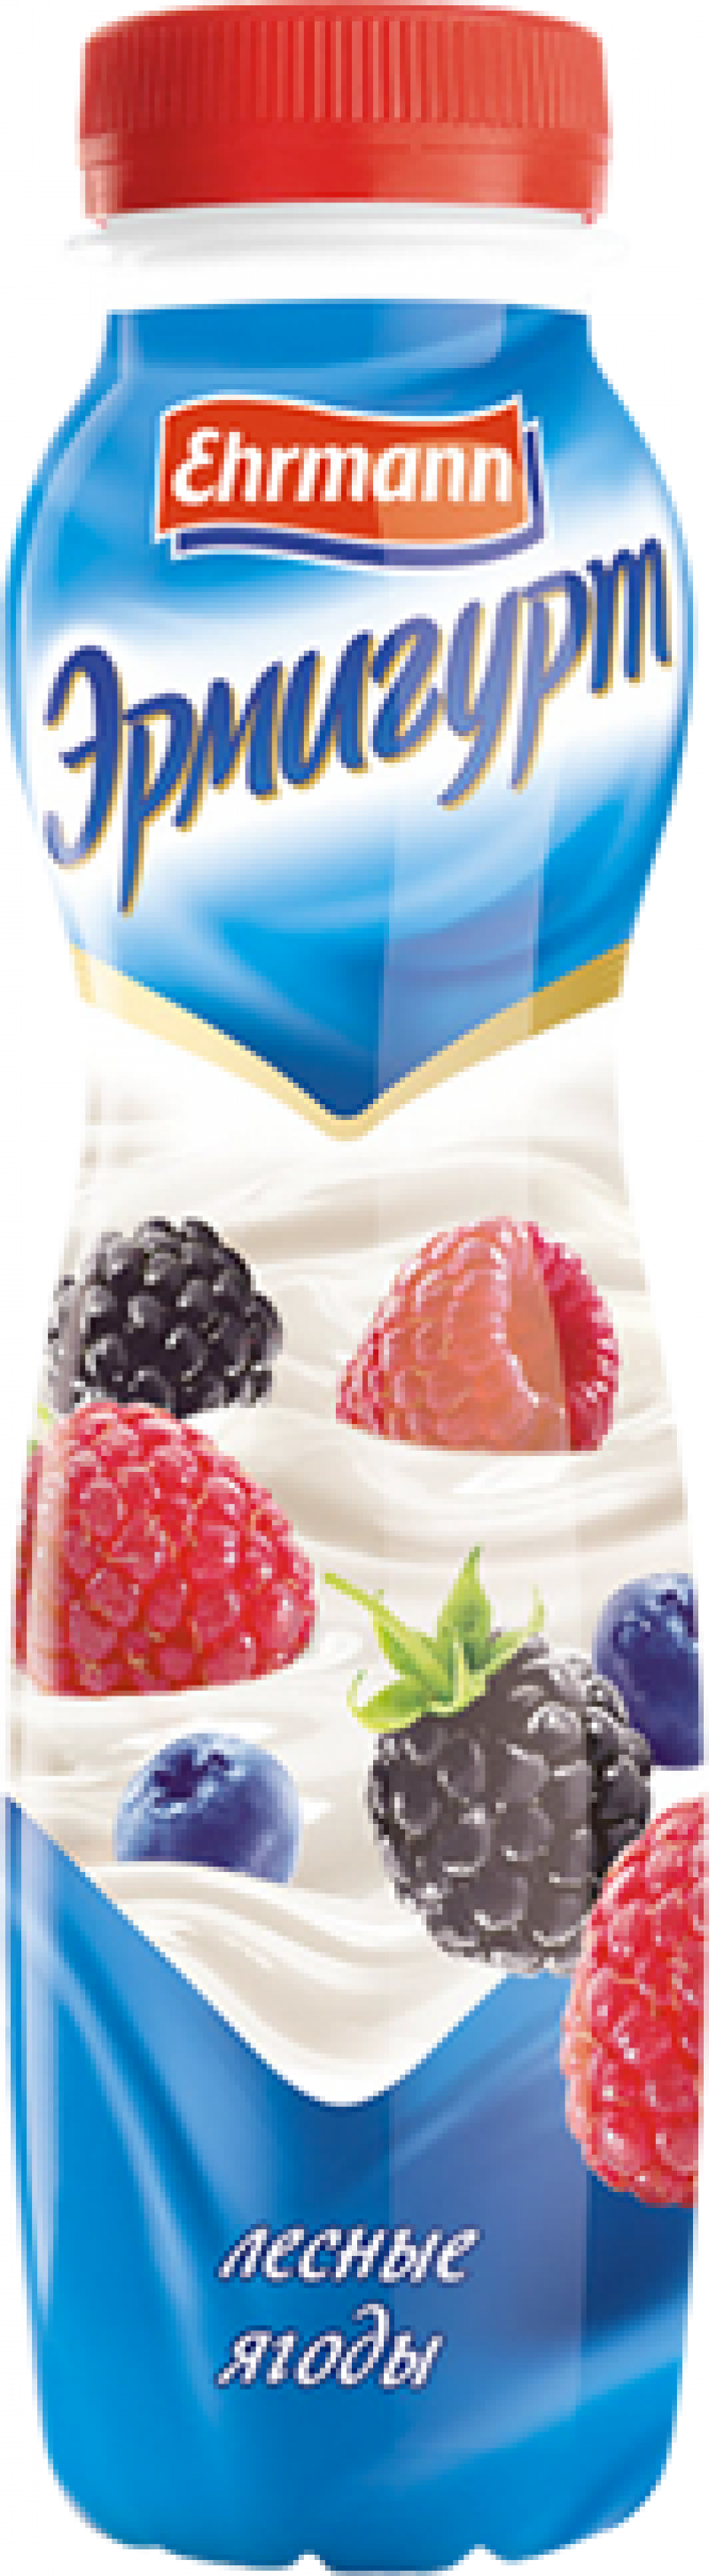 Йогурт ТМ Эрмигурт питьевой Лесные ягоды 1,2% 290г